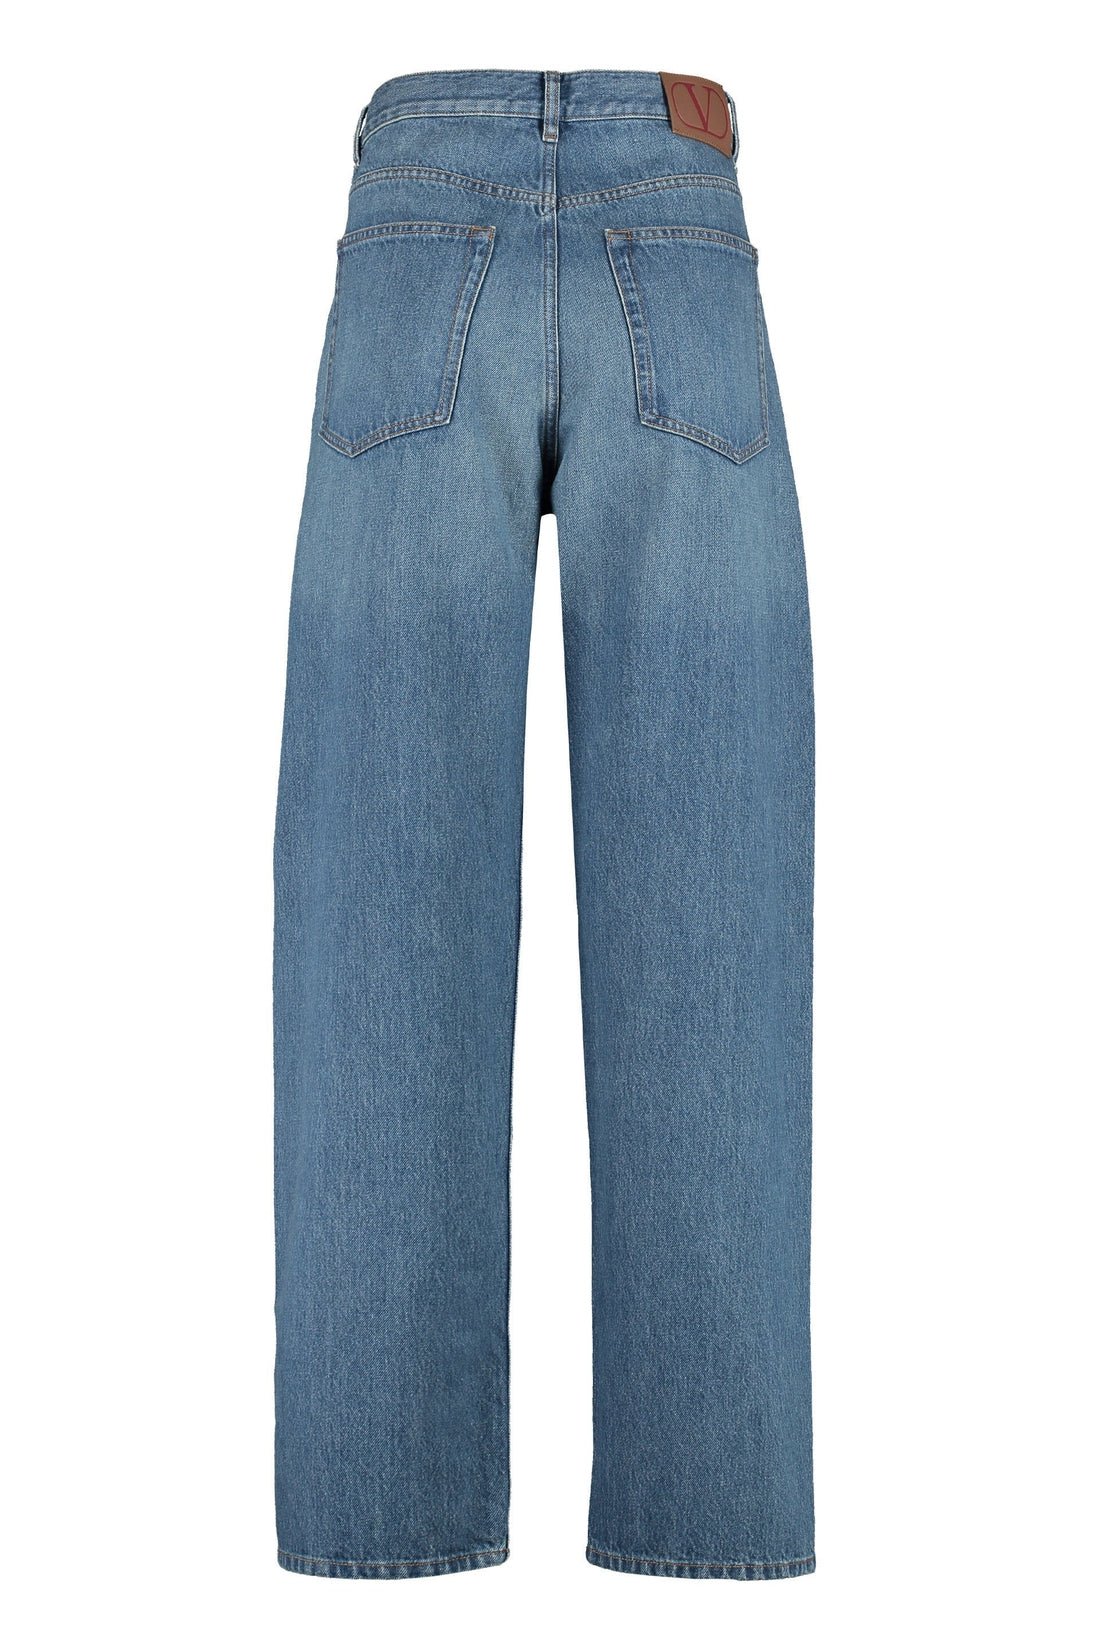 Valentino-OUTLET-SALE-Wide-leg jeans-ARCHIVIST